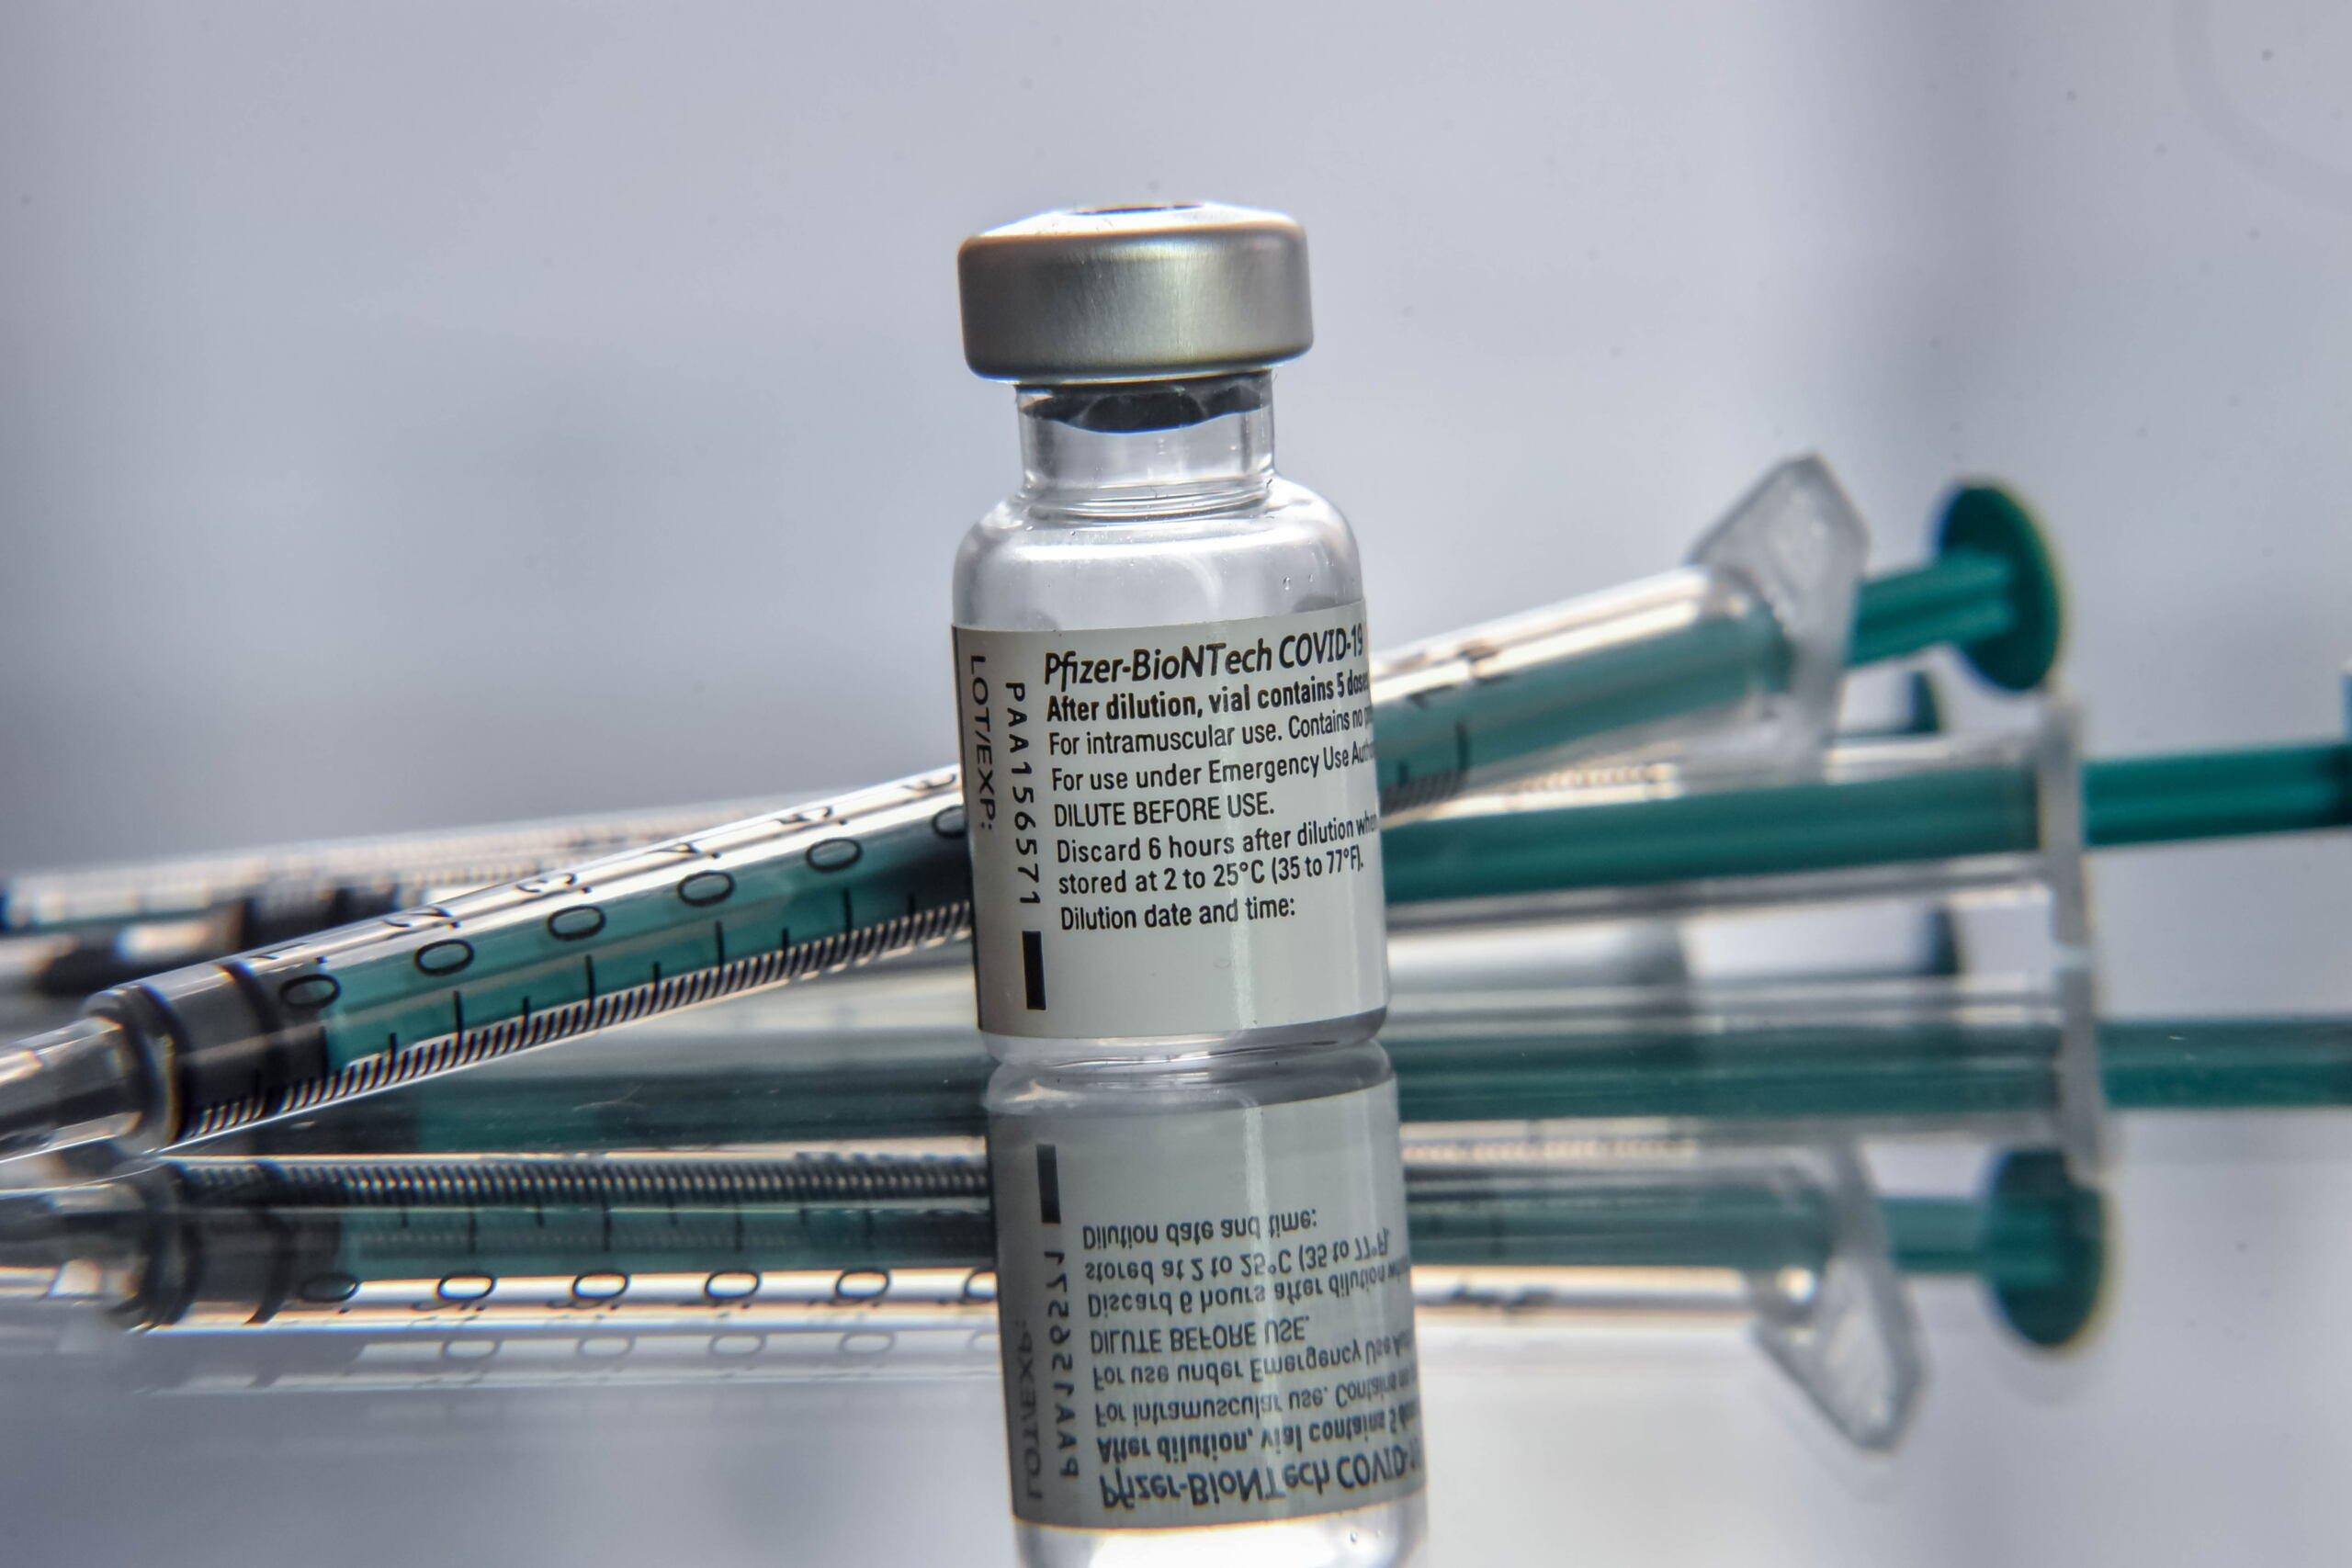 szczepionka Pfizer/BioNtech i strzykawki